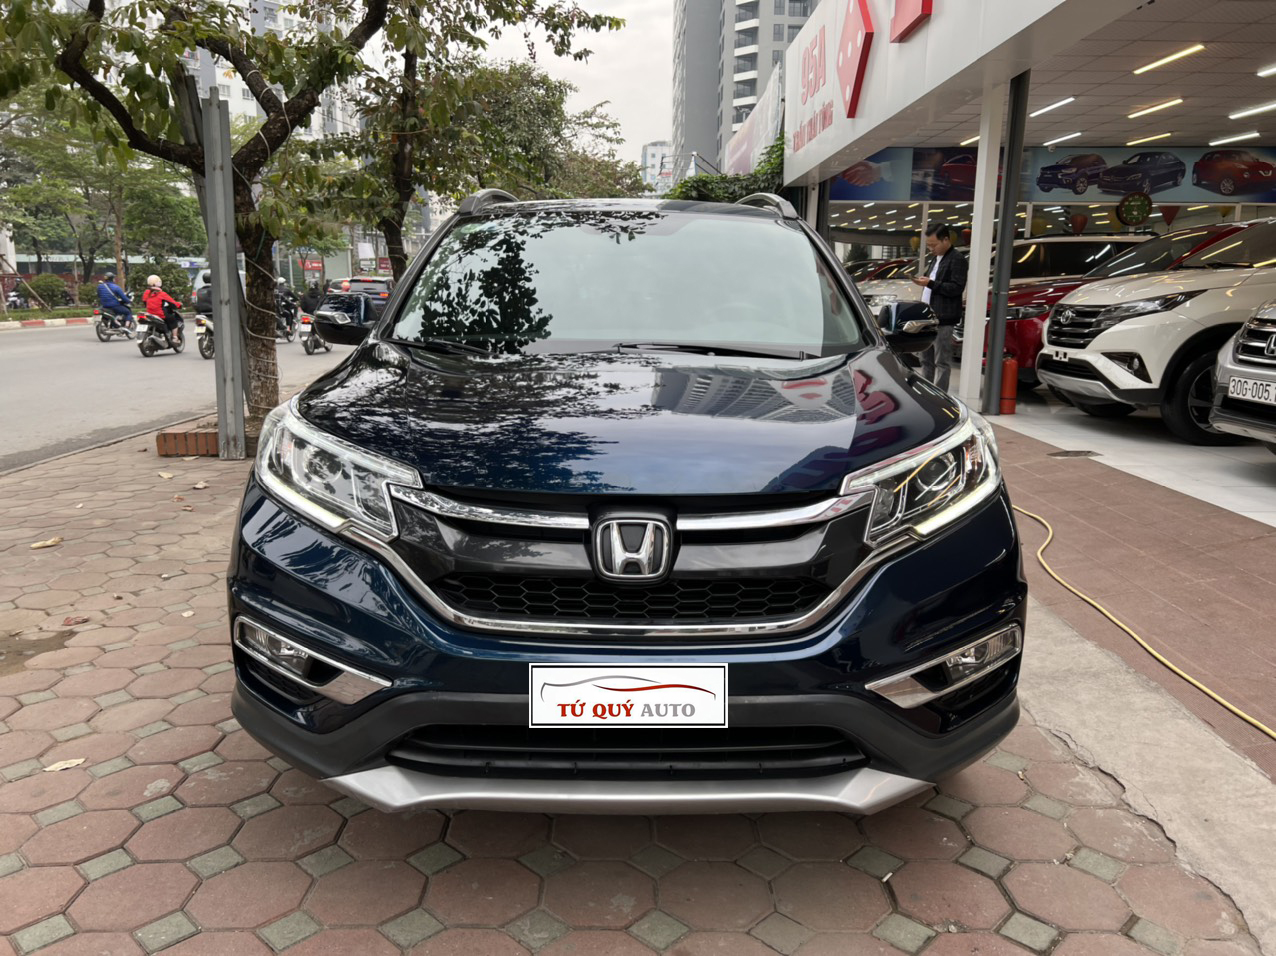 Honda CRV 2017 bán tại Việt Nam giá bao nhiêu